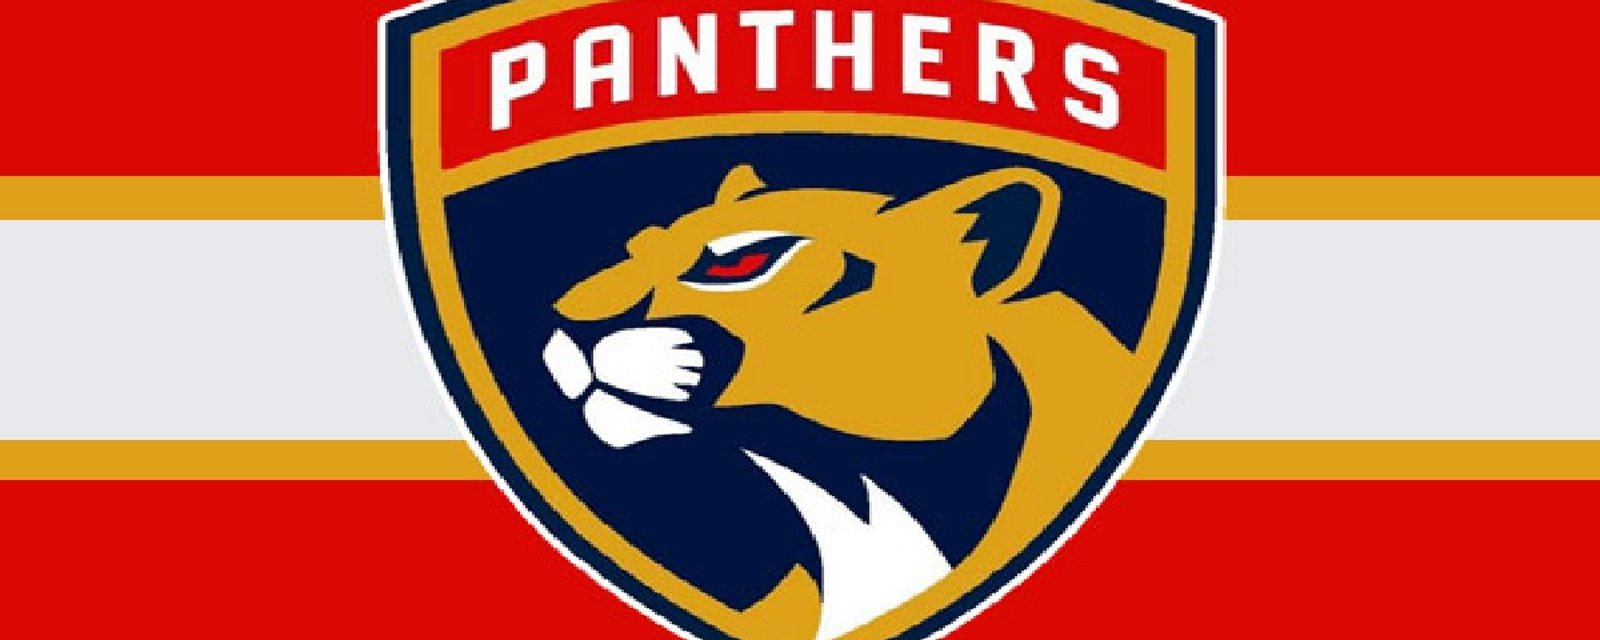 Les joueurs des Panthers se rebellent déjà contre leur nouvel entraîneur!